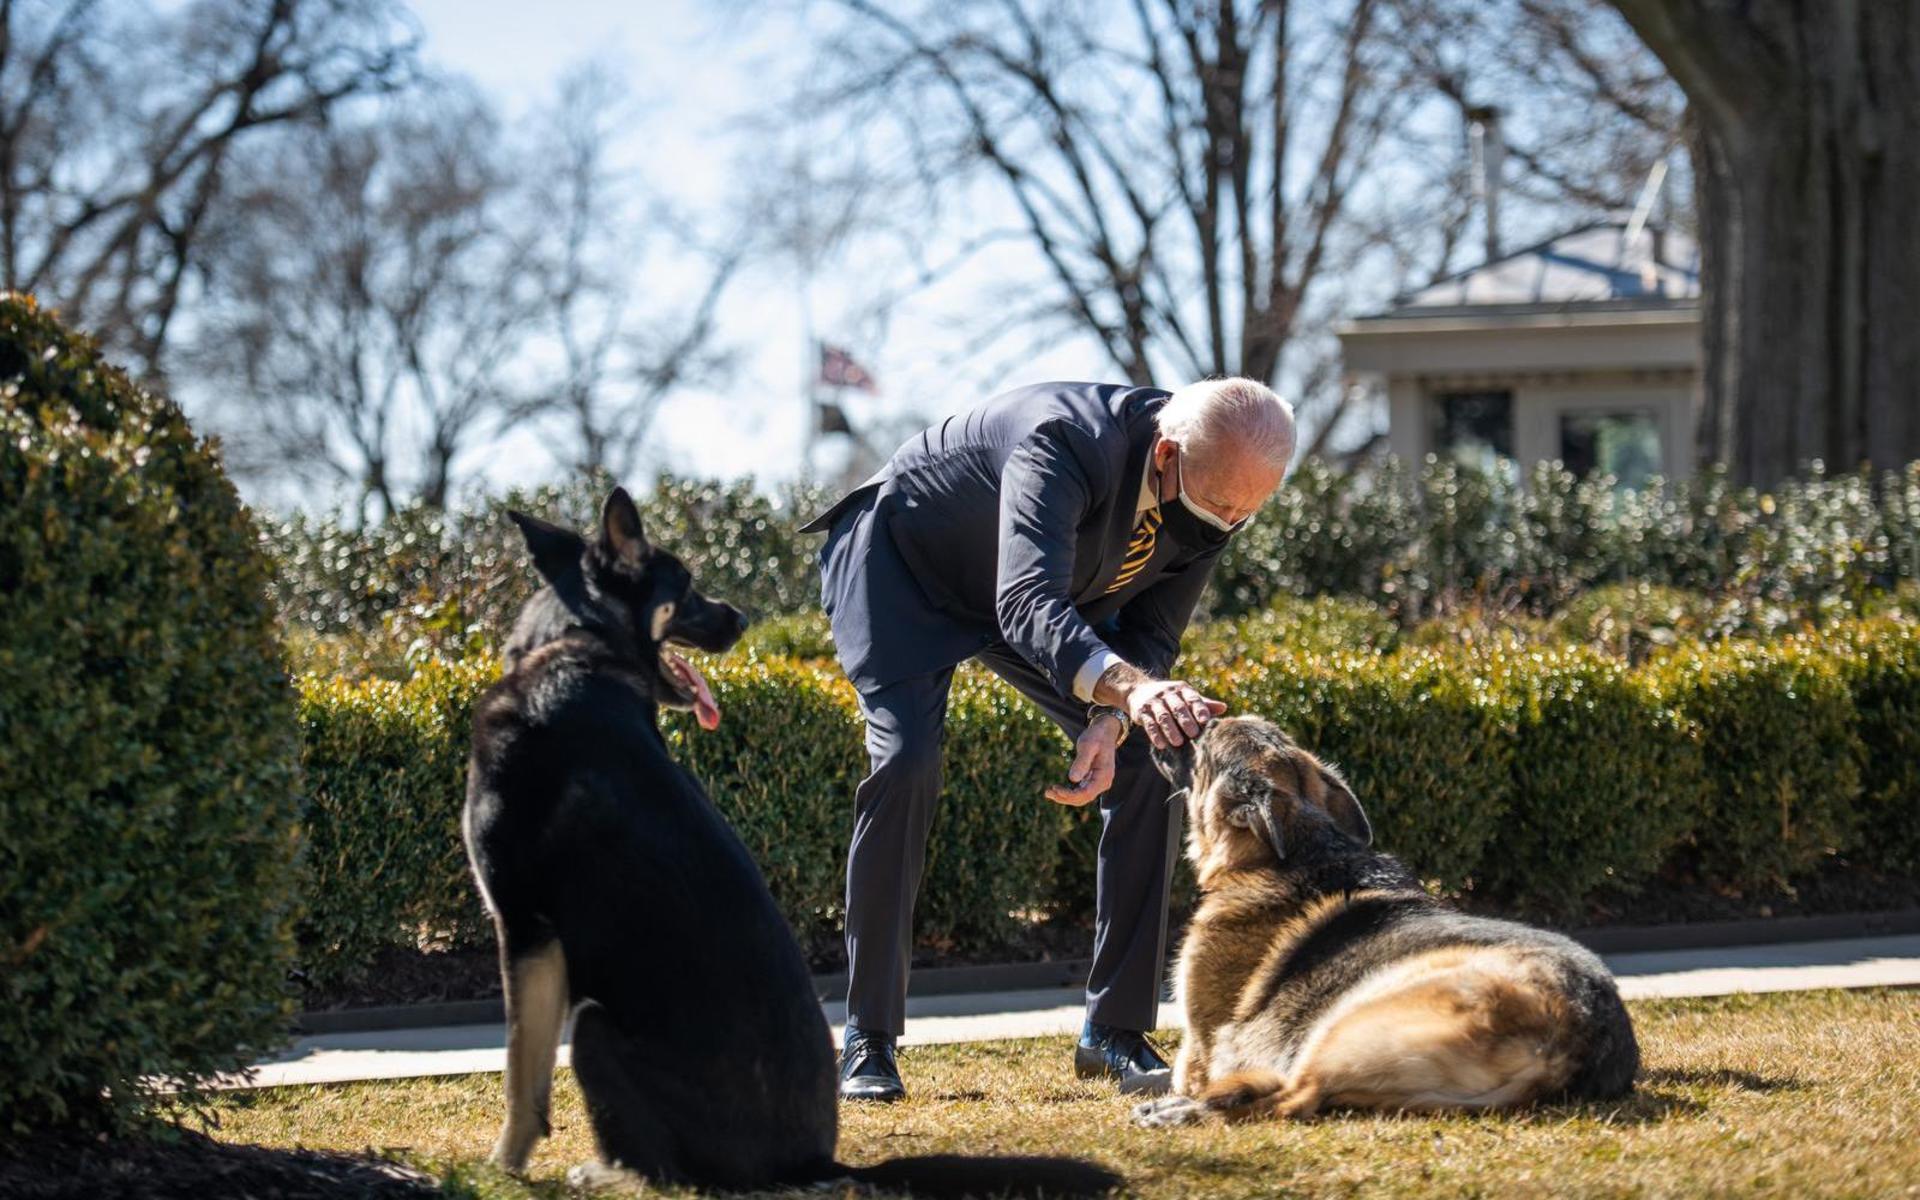 President Joe Biden med hundarna Champ och Major. Hundarna ska ha lämnat Vita huset och återvänt till familjens hem i Wilmington